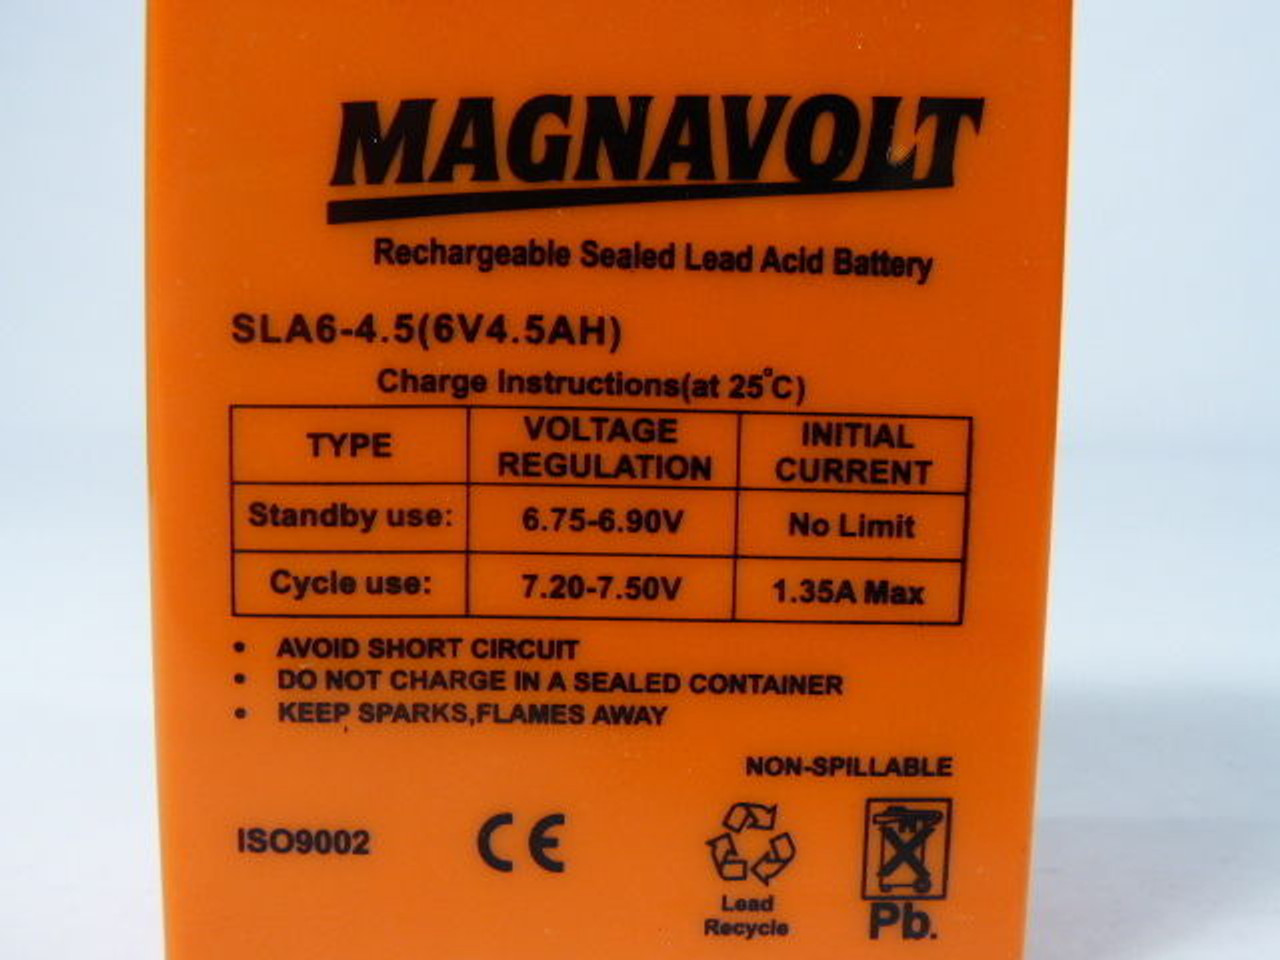 Magnavolt SLA6-4.5 Rechargeable Sealed Lead Acid Battery 6V 4.5AH USED